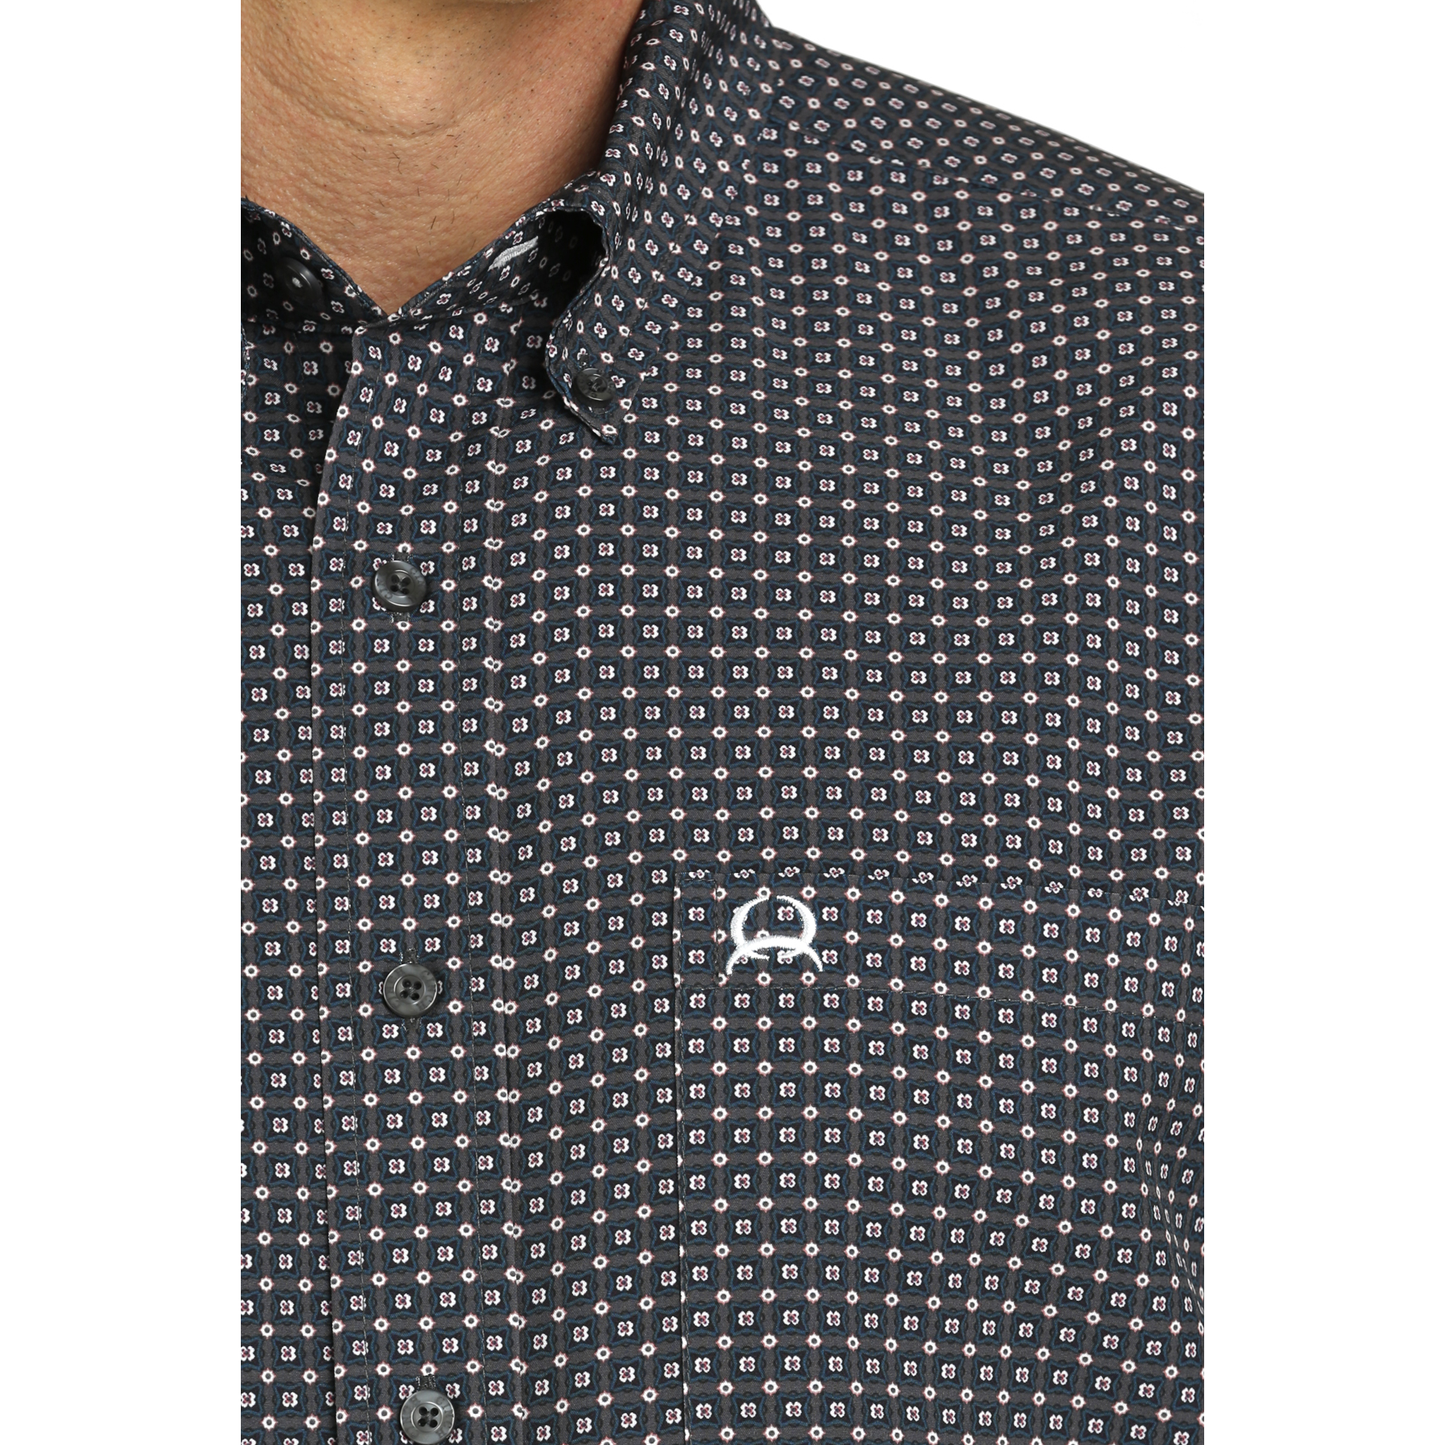 Cinch Men's Charcoal Checkered Print Arenaflex Button Shirt MTW1704140